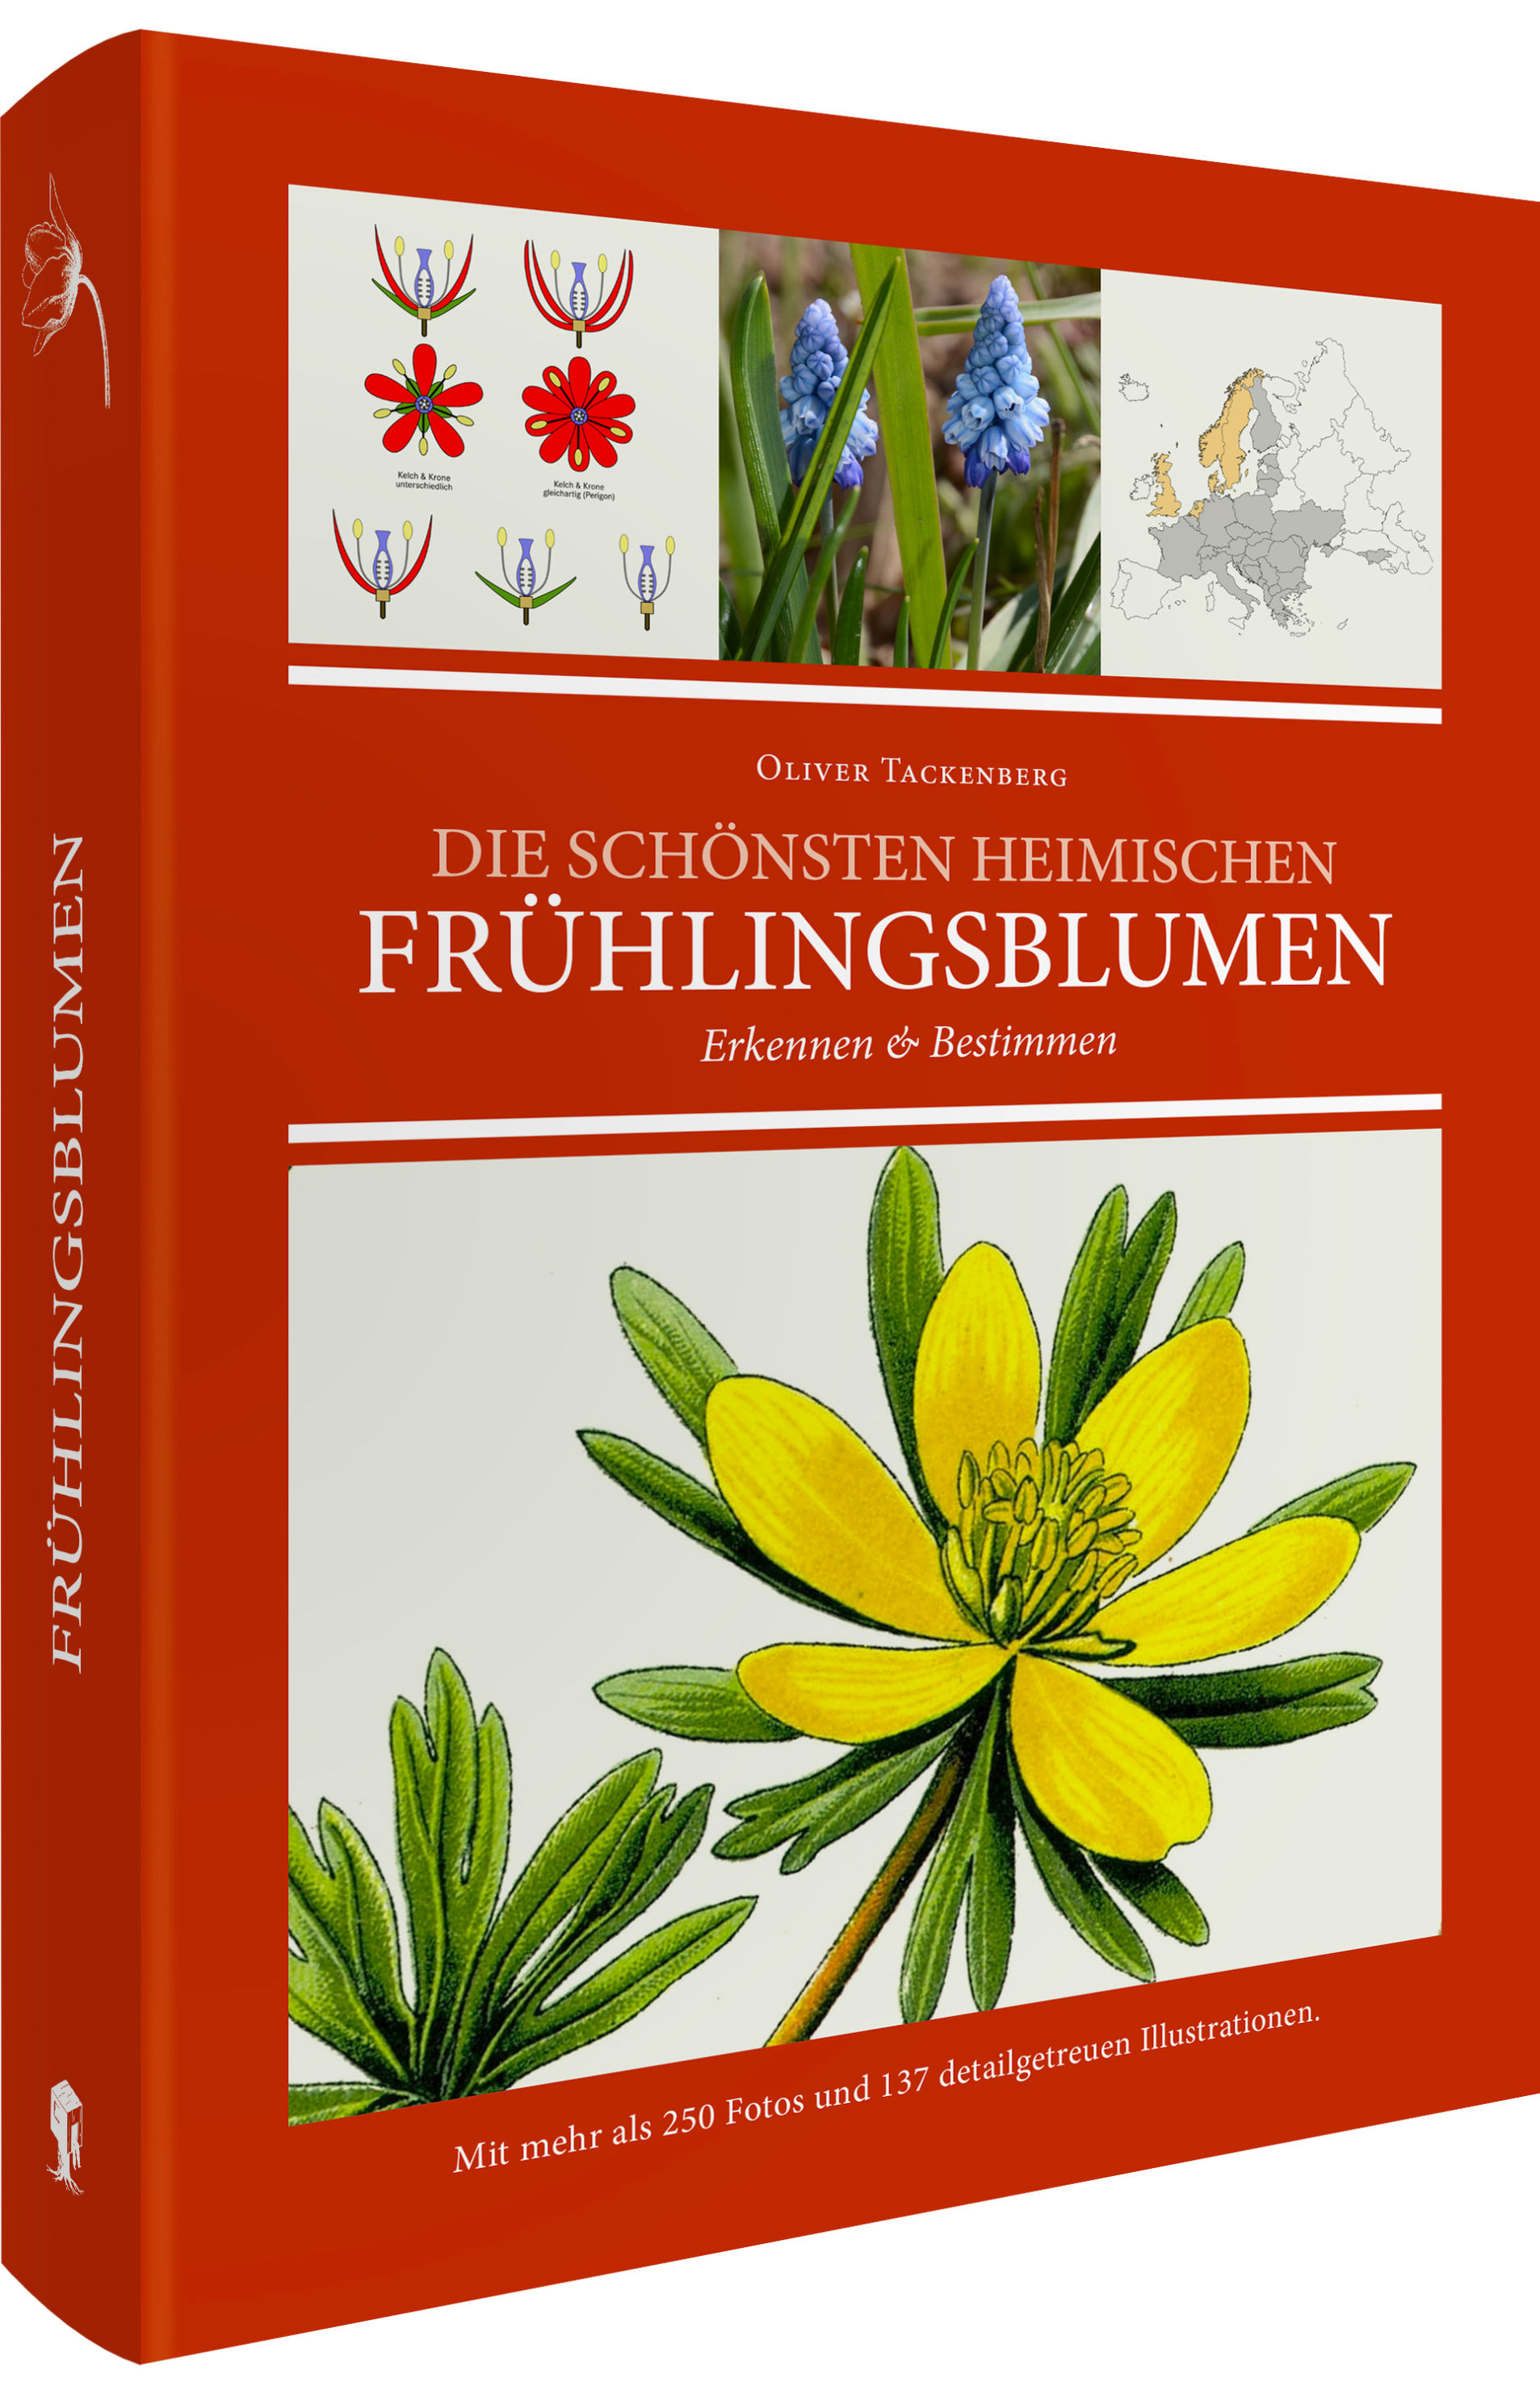 Die schönsten heimischen Frühlingsblumen erkennen & bestimmen Buch